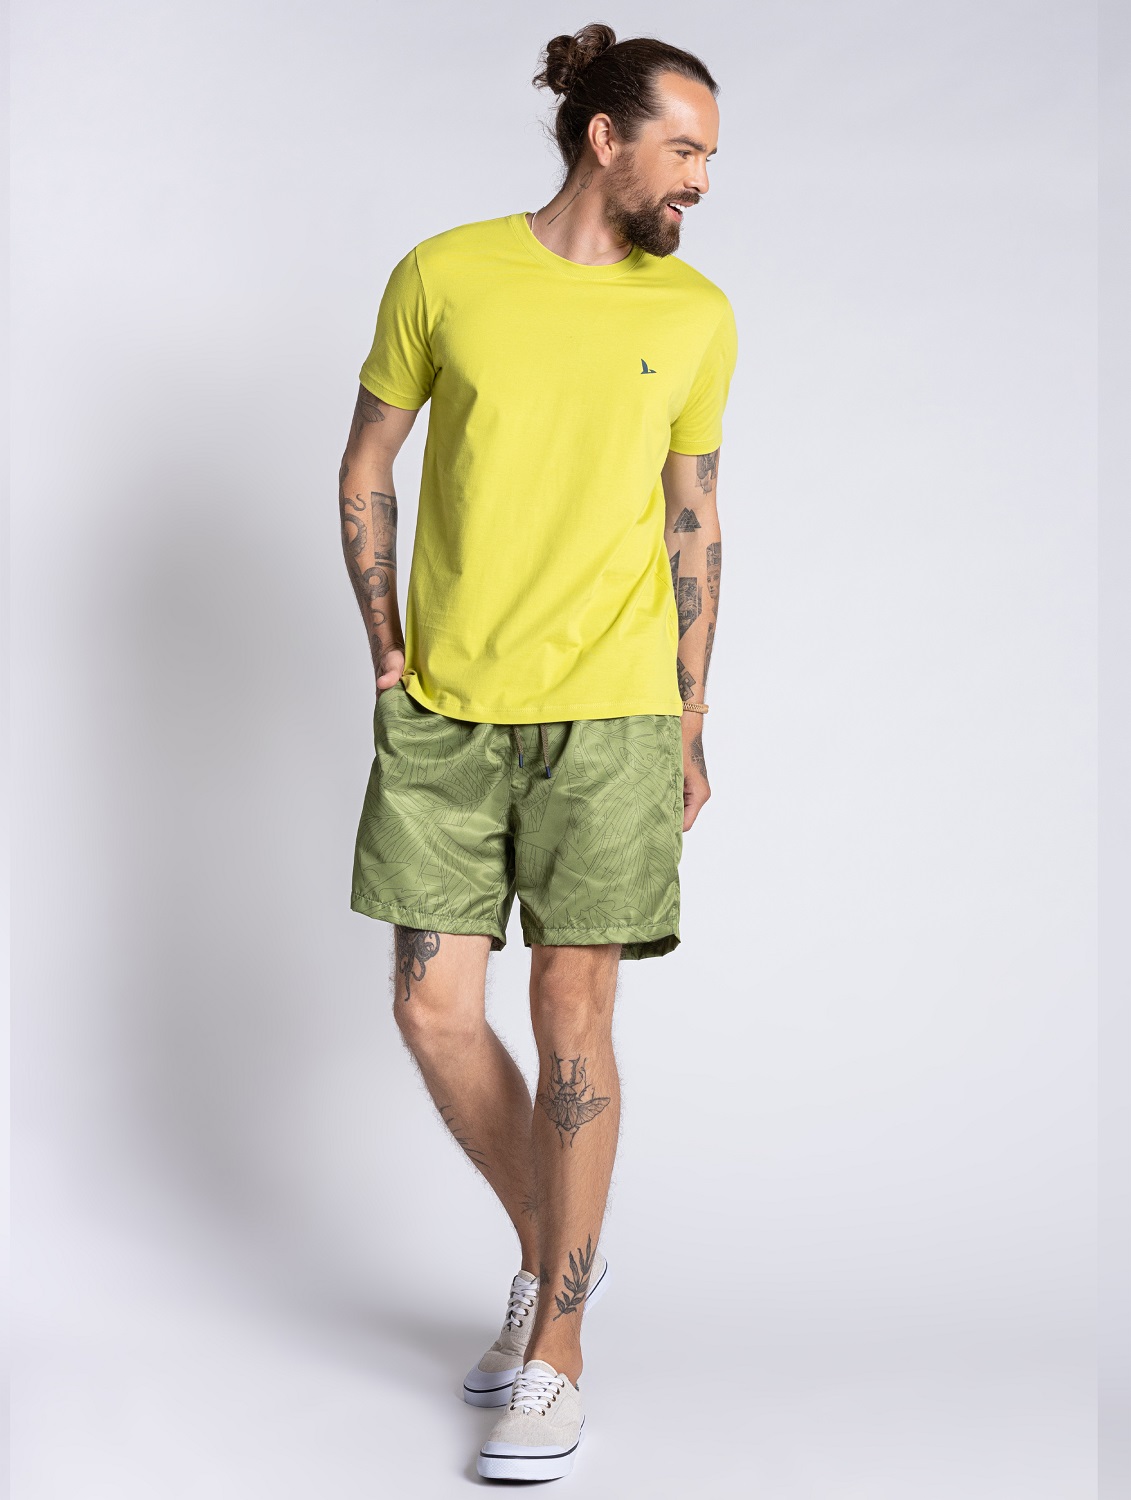 Camiseta Básica Masculina Verde Lima - OVBK